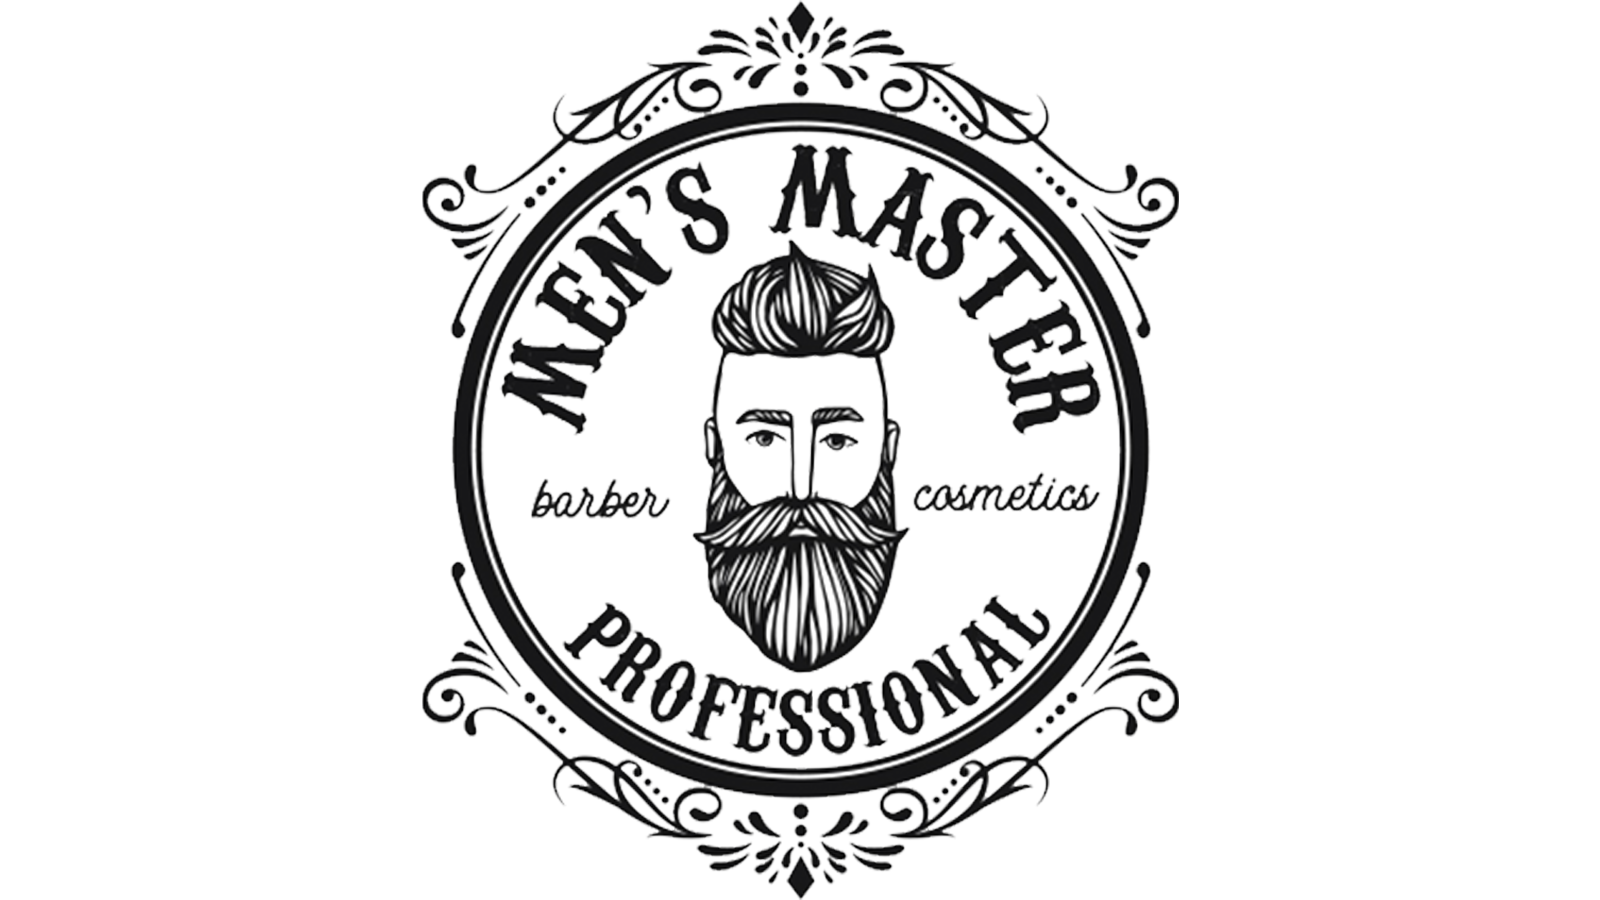 MEN'S MASTER PROFESSIONAL